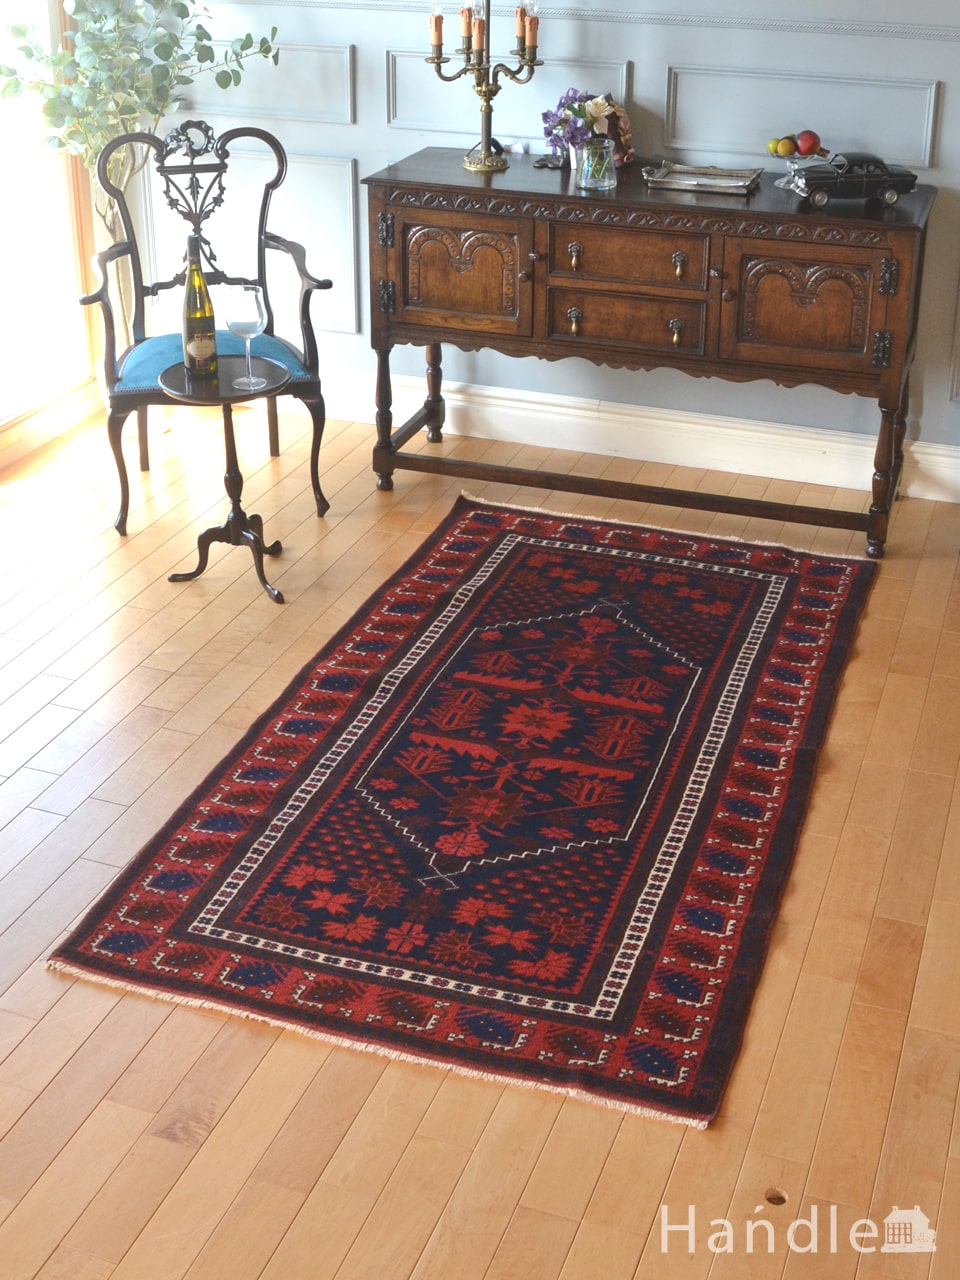 ビンテージのおしゃれな絨毯、色が美しいバルケシルのトライバルラグ(m